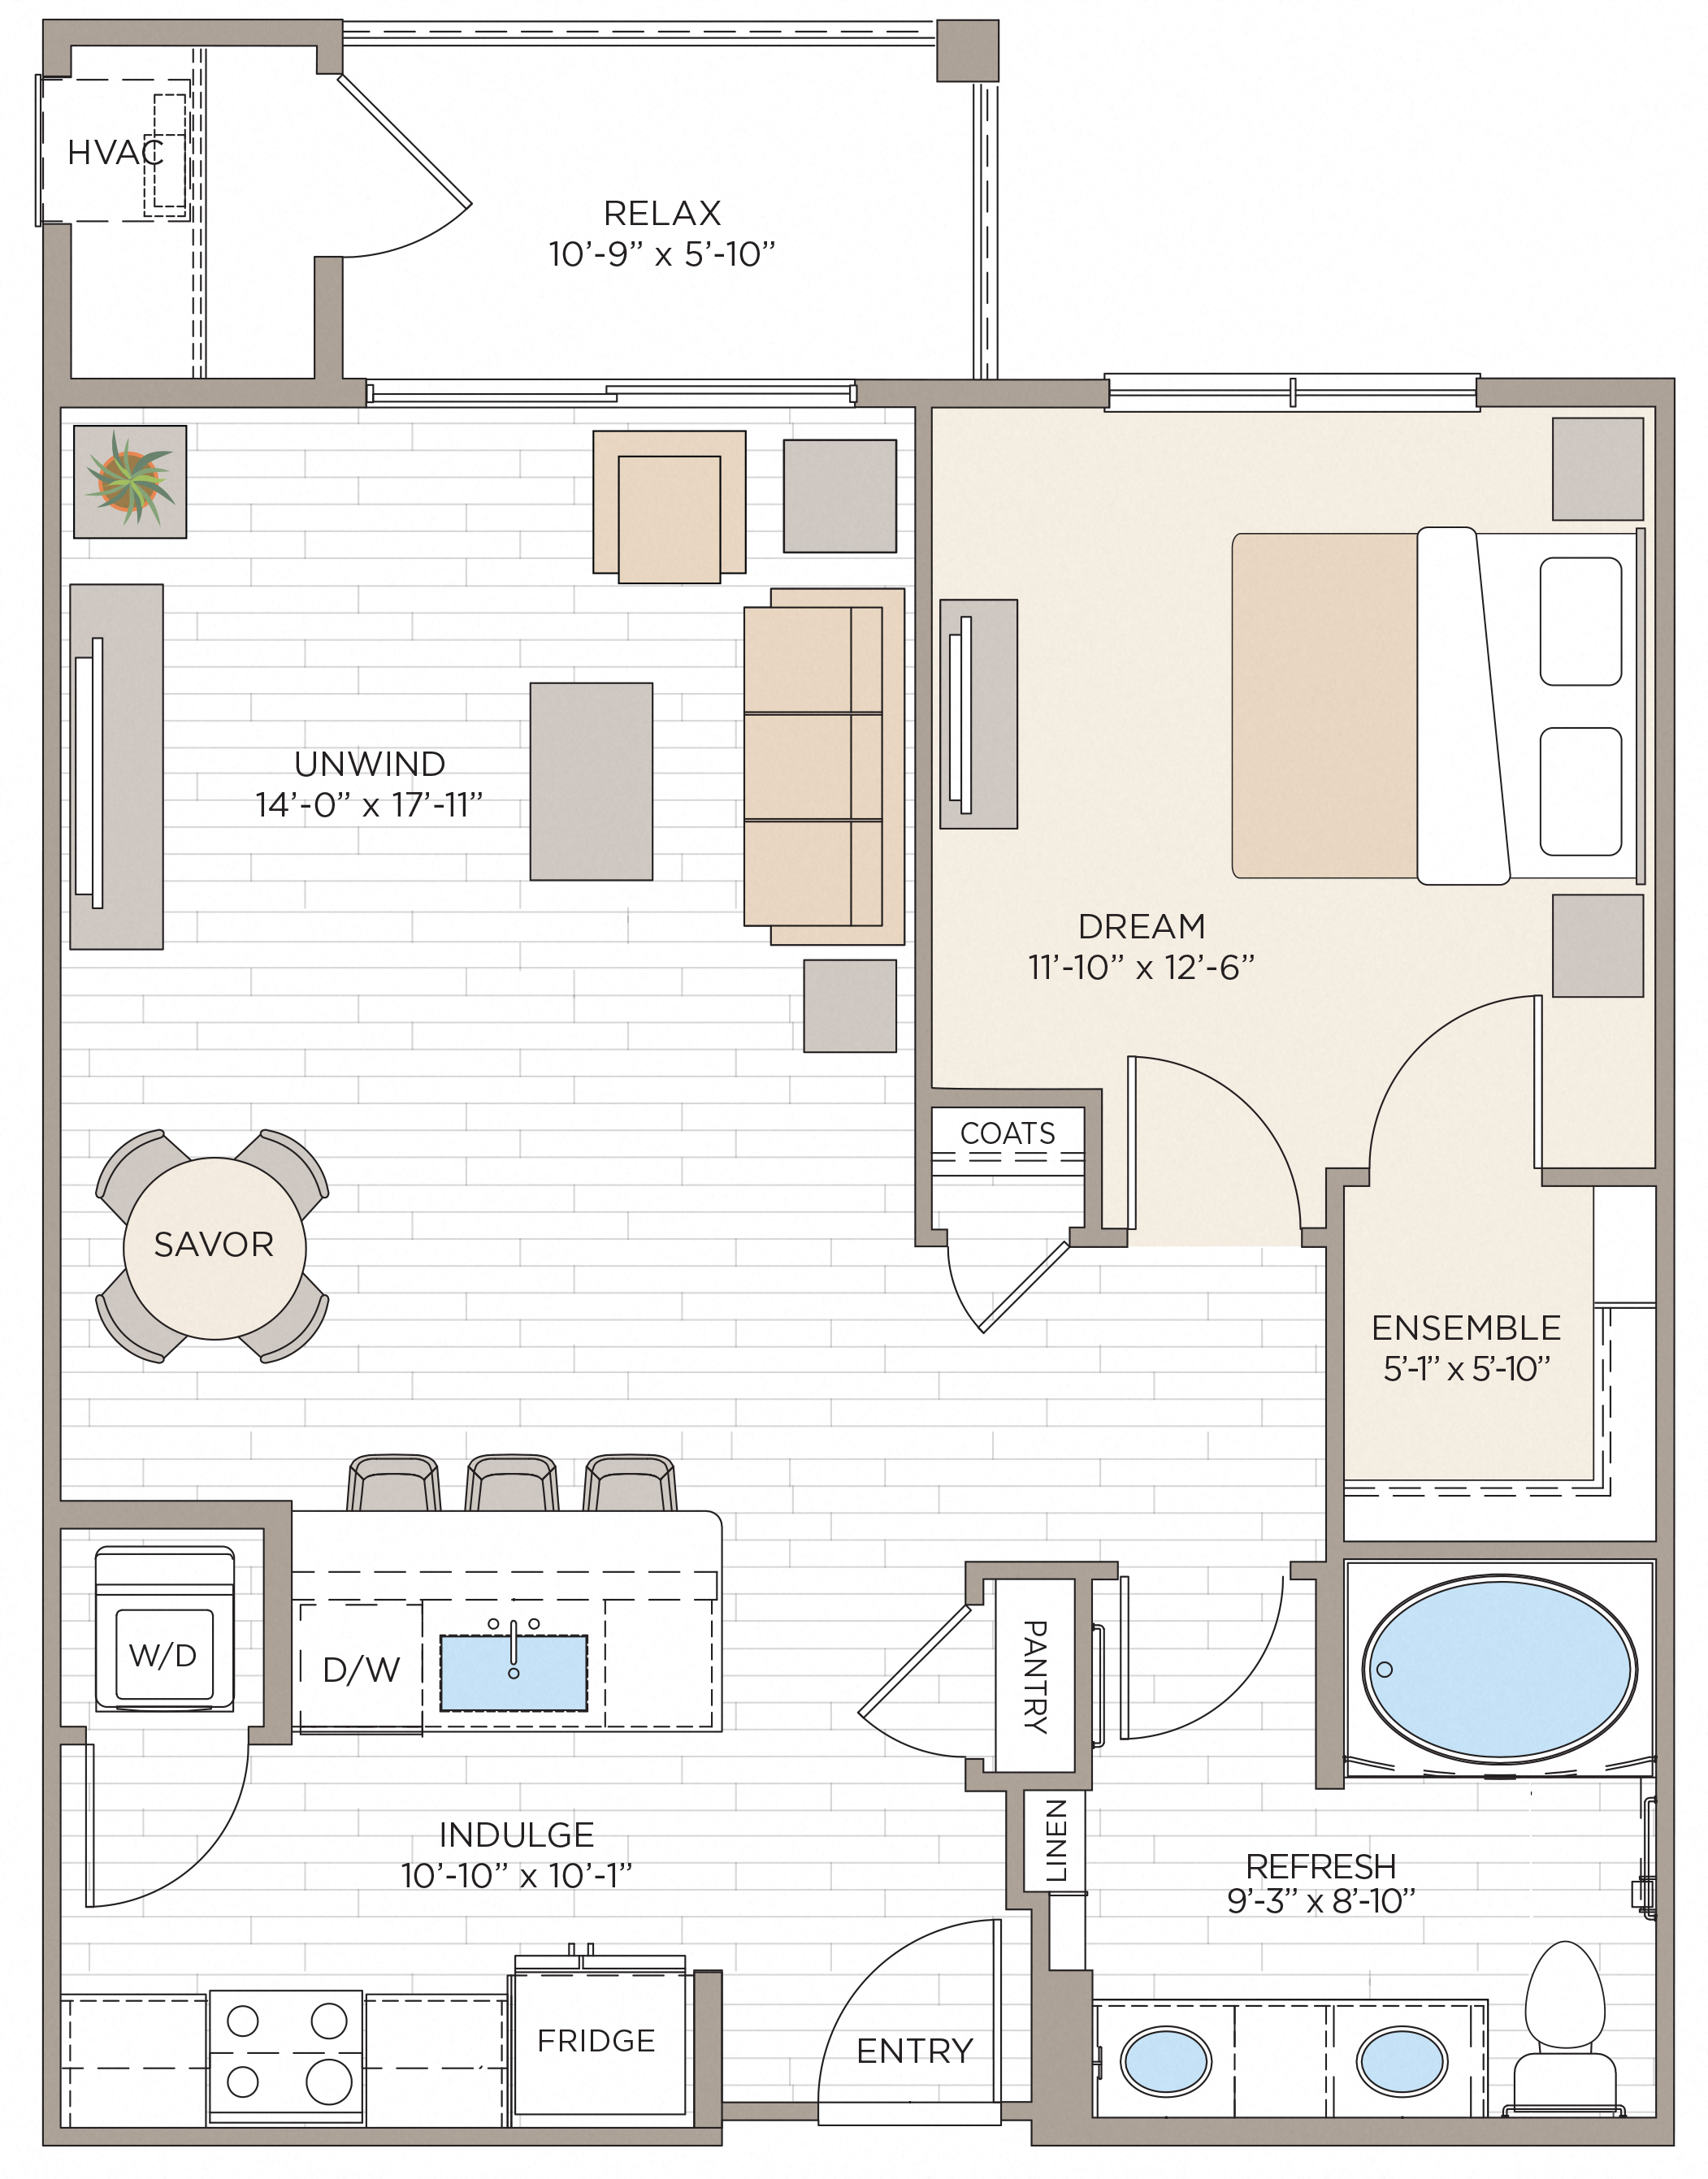 Floorplan for Unit #A1B, 1  bedroom unit at Halstead Maynard Crossing